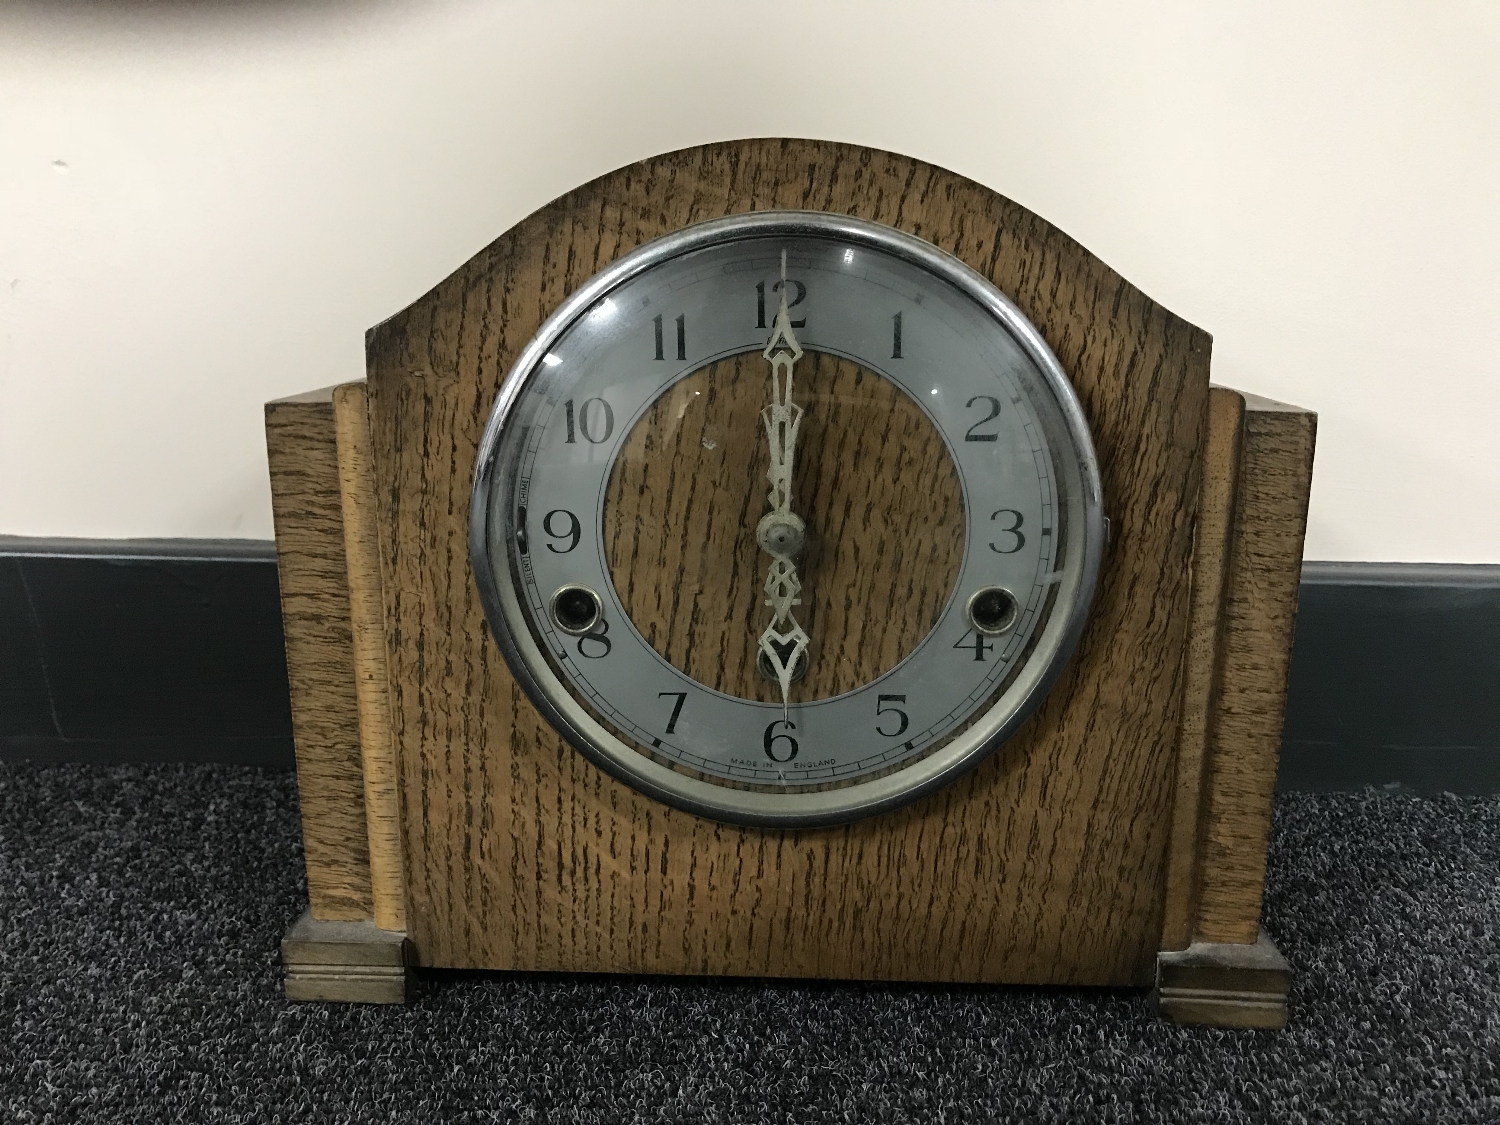 An oak cased Enfield mantel clock